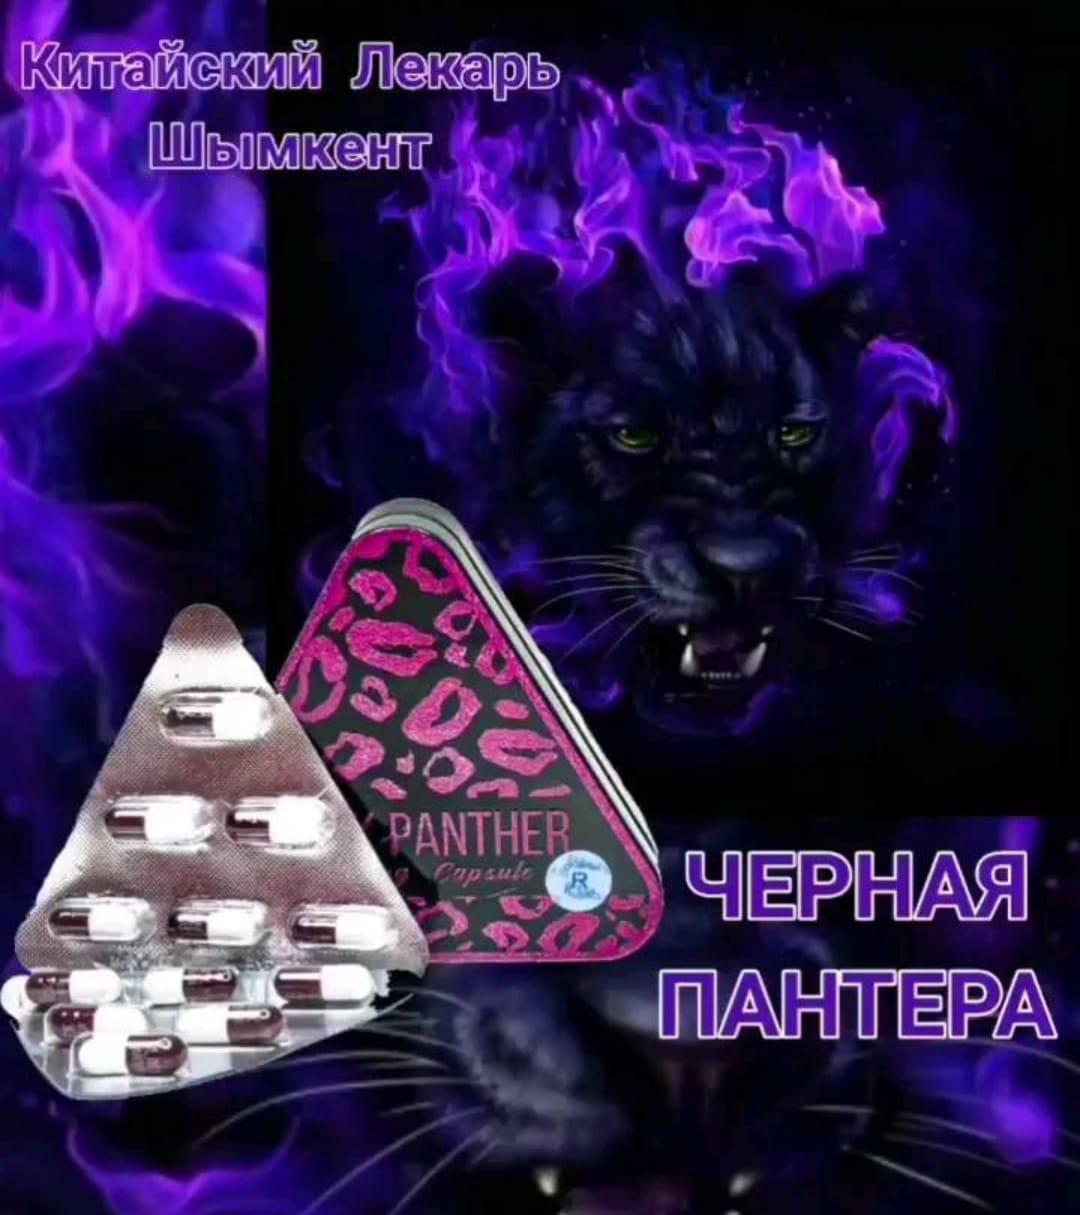 Капсулы для похудения Black Panther Черная пантера треугольник, фото 1